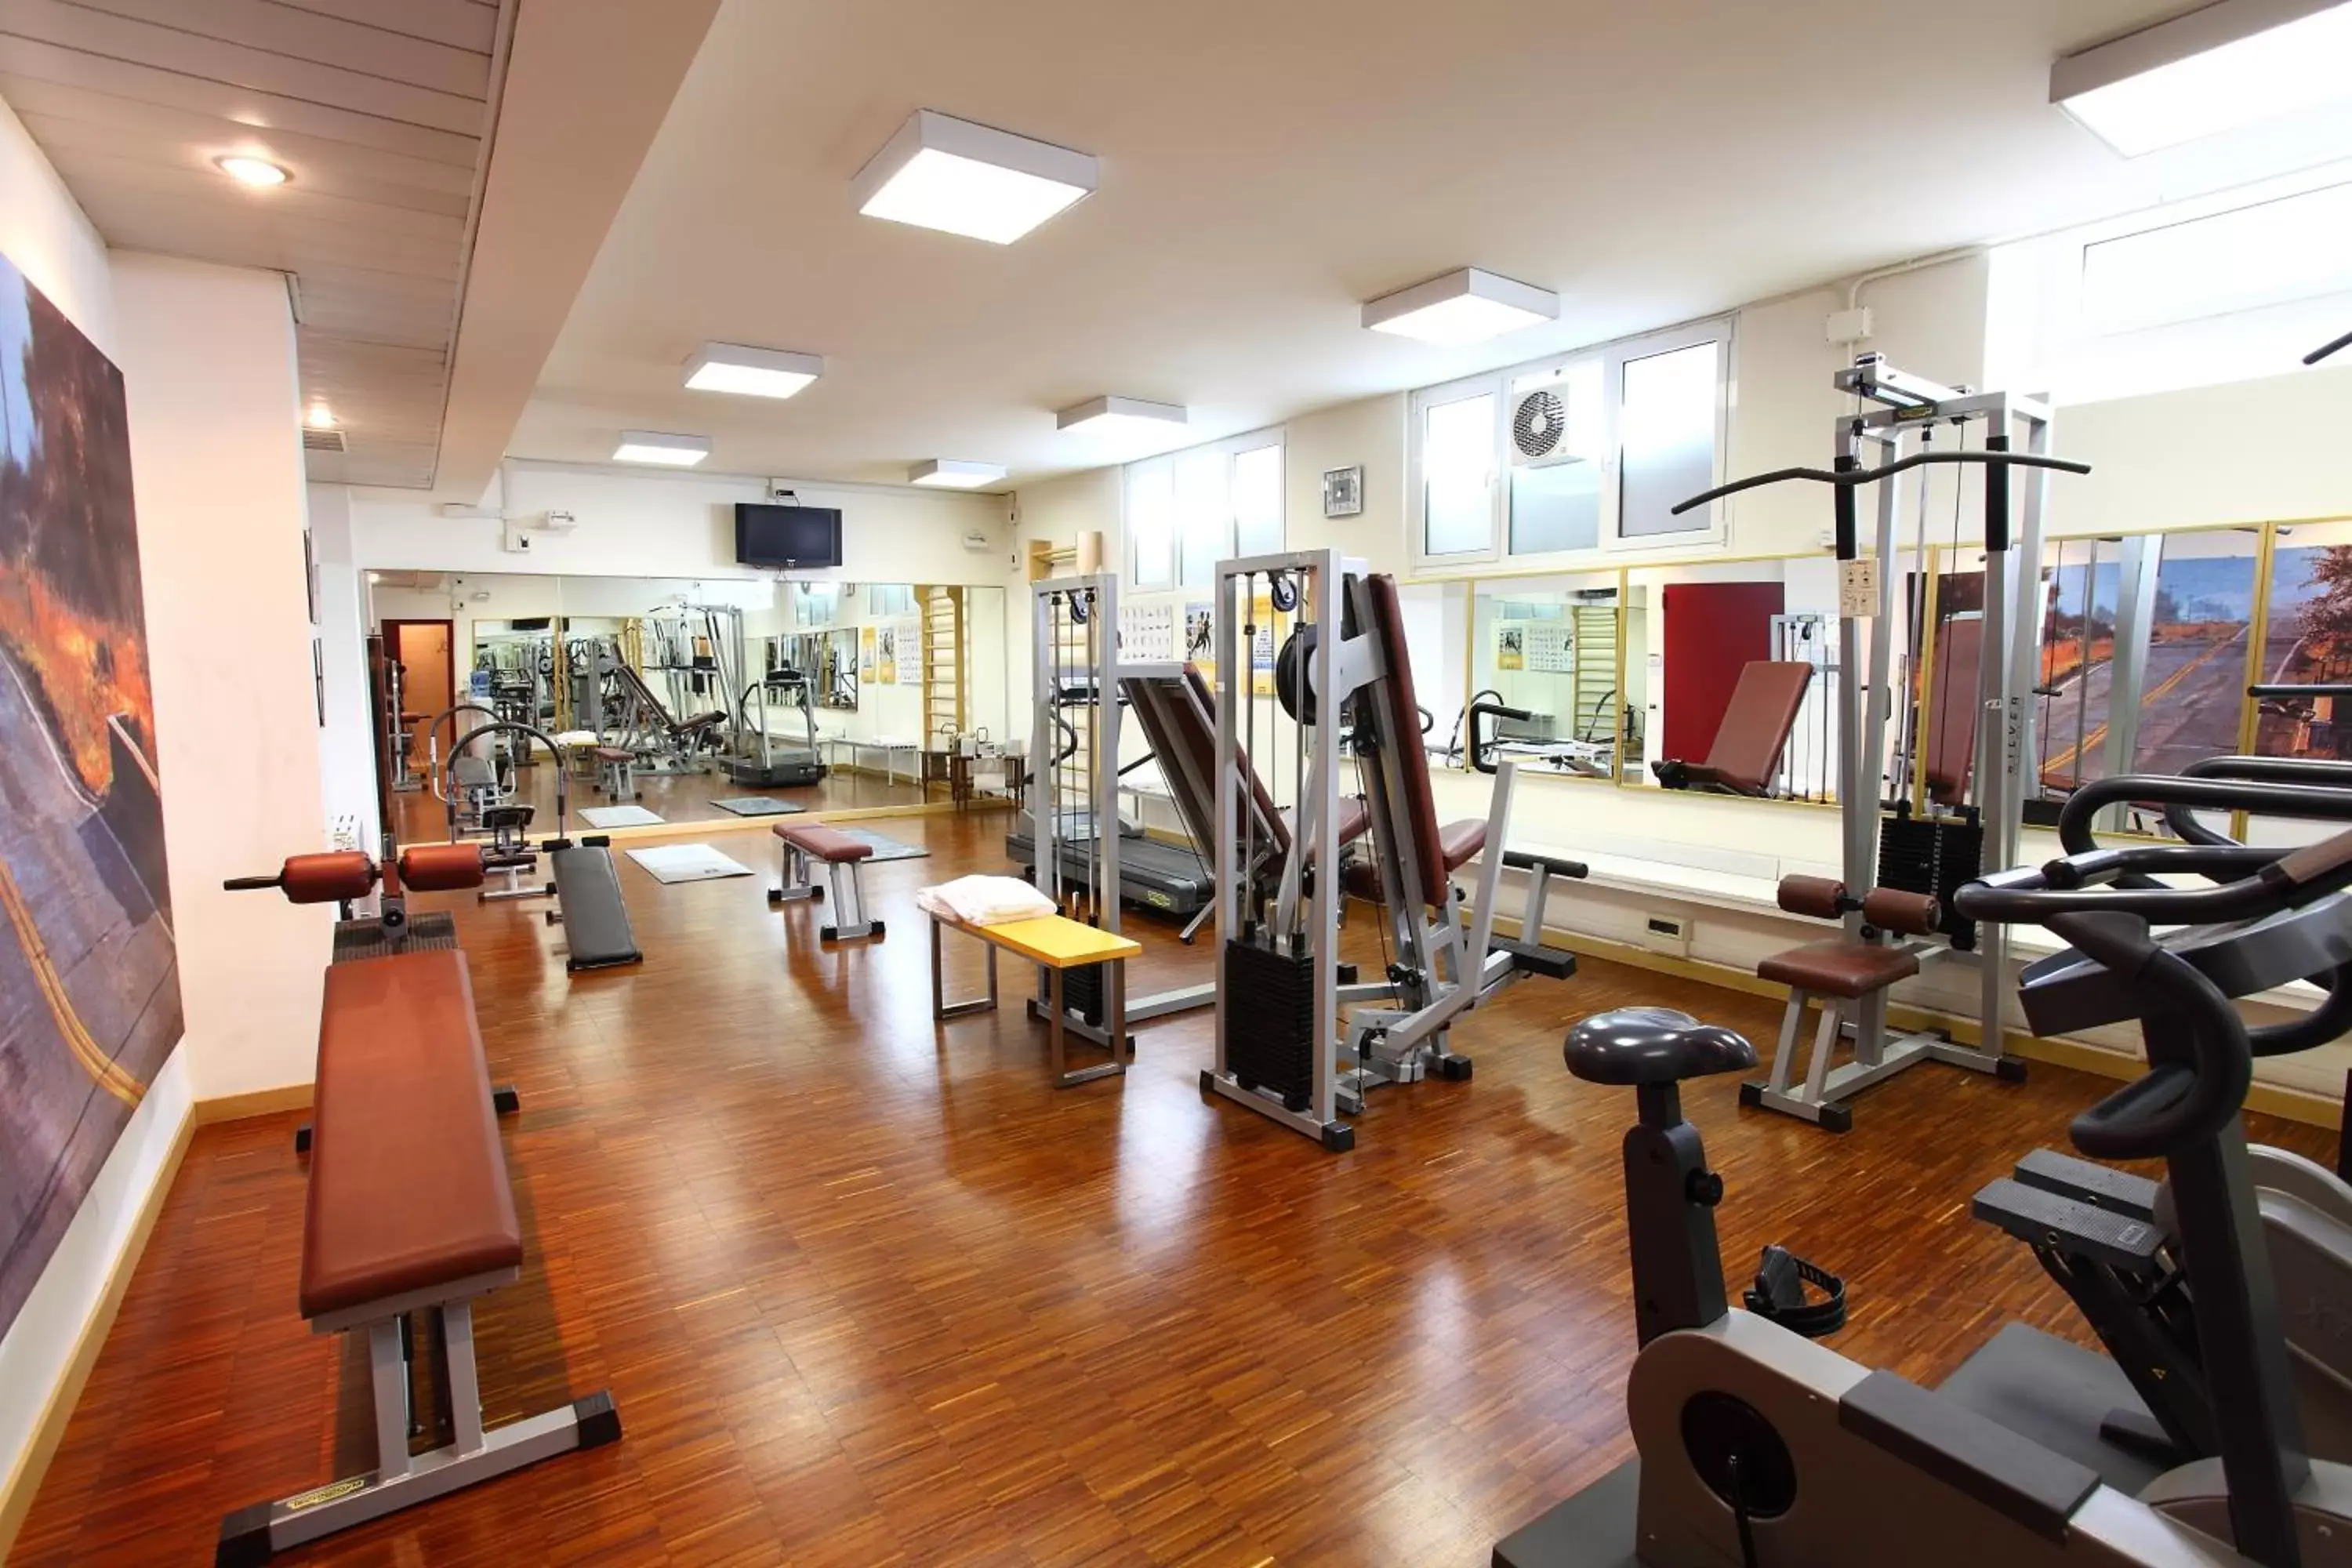 Fitness centre/facilities, Fitness Center/Facilities in Residenza delle Città